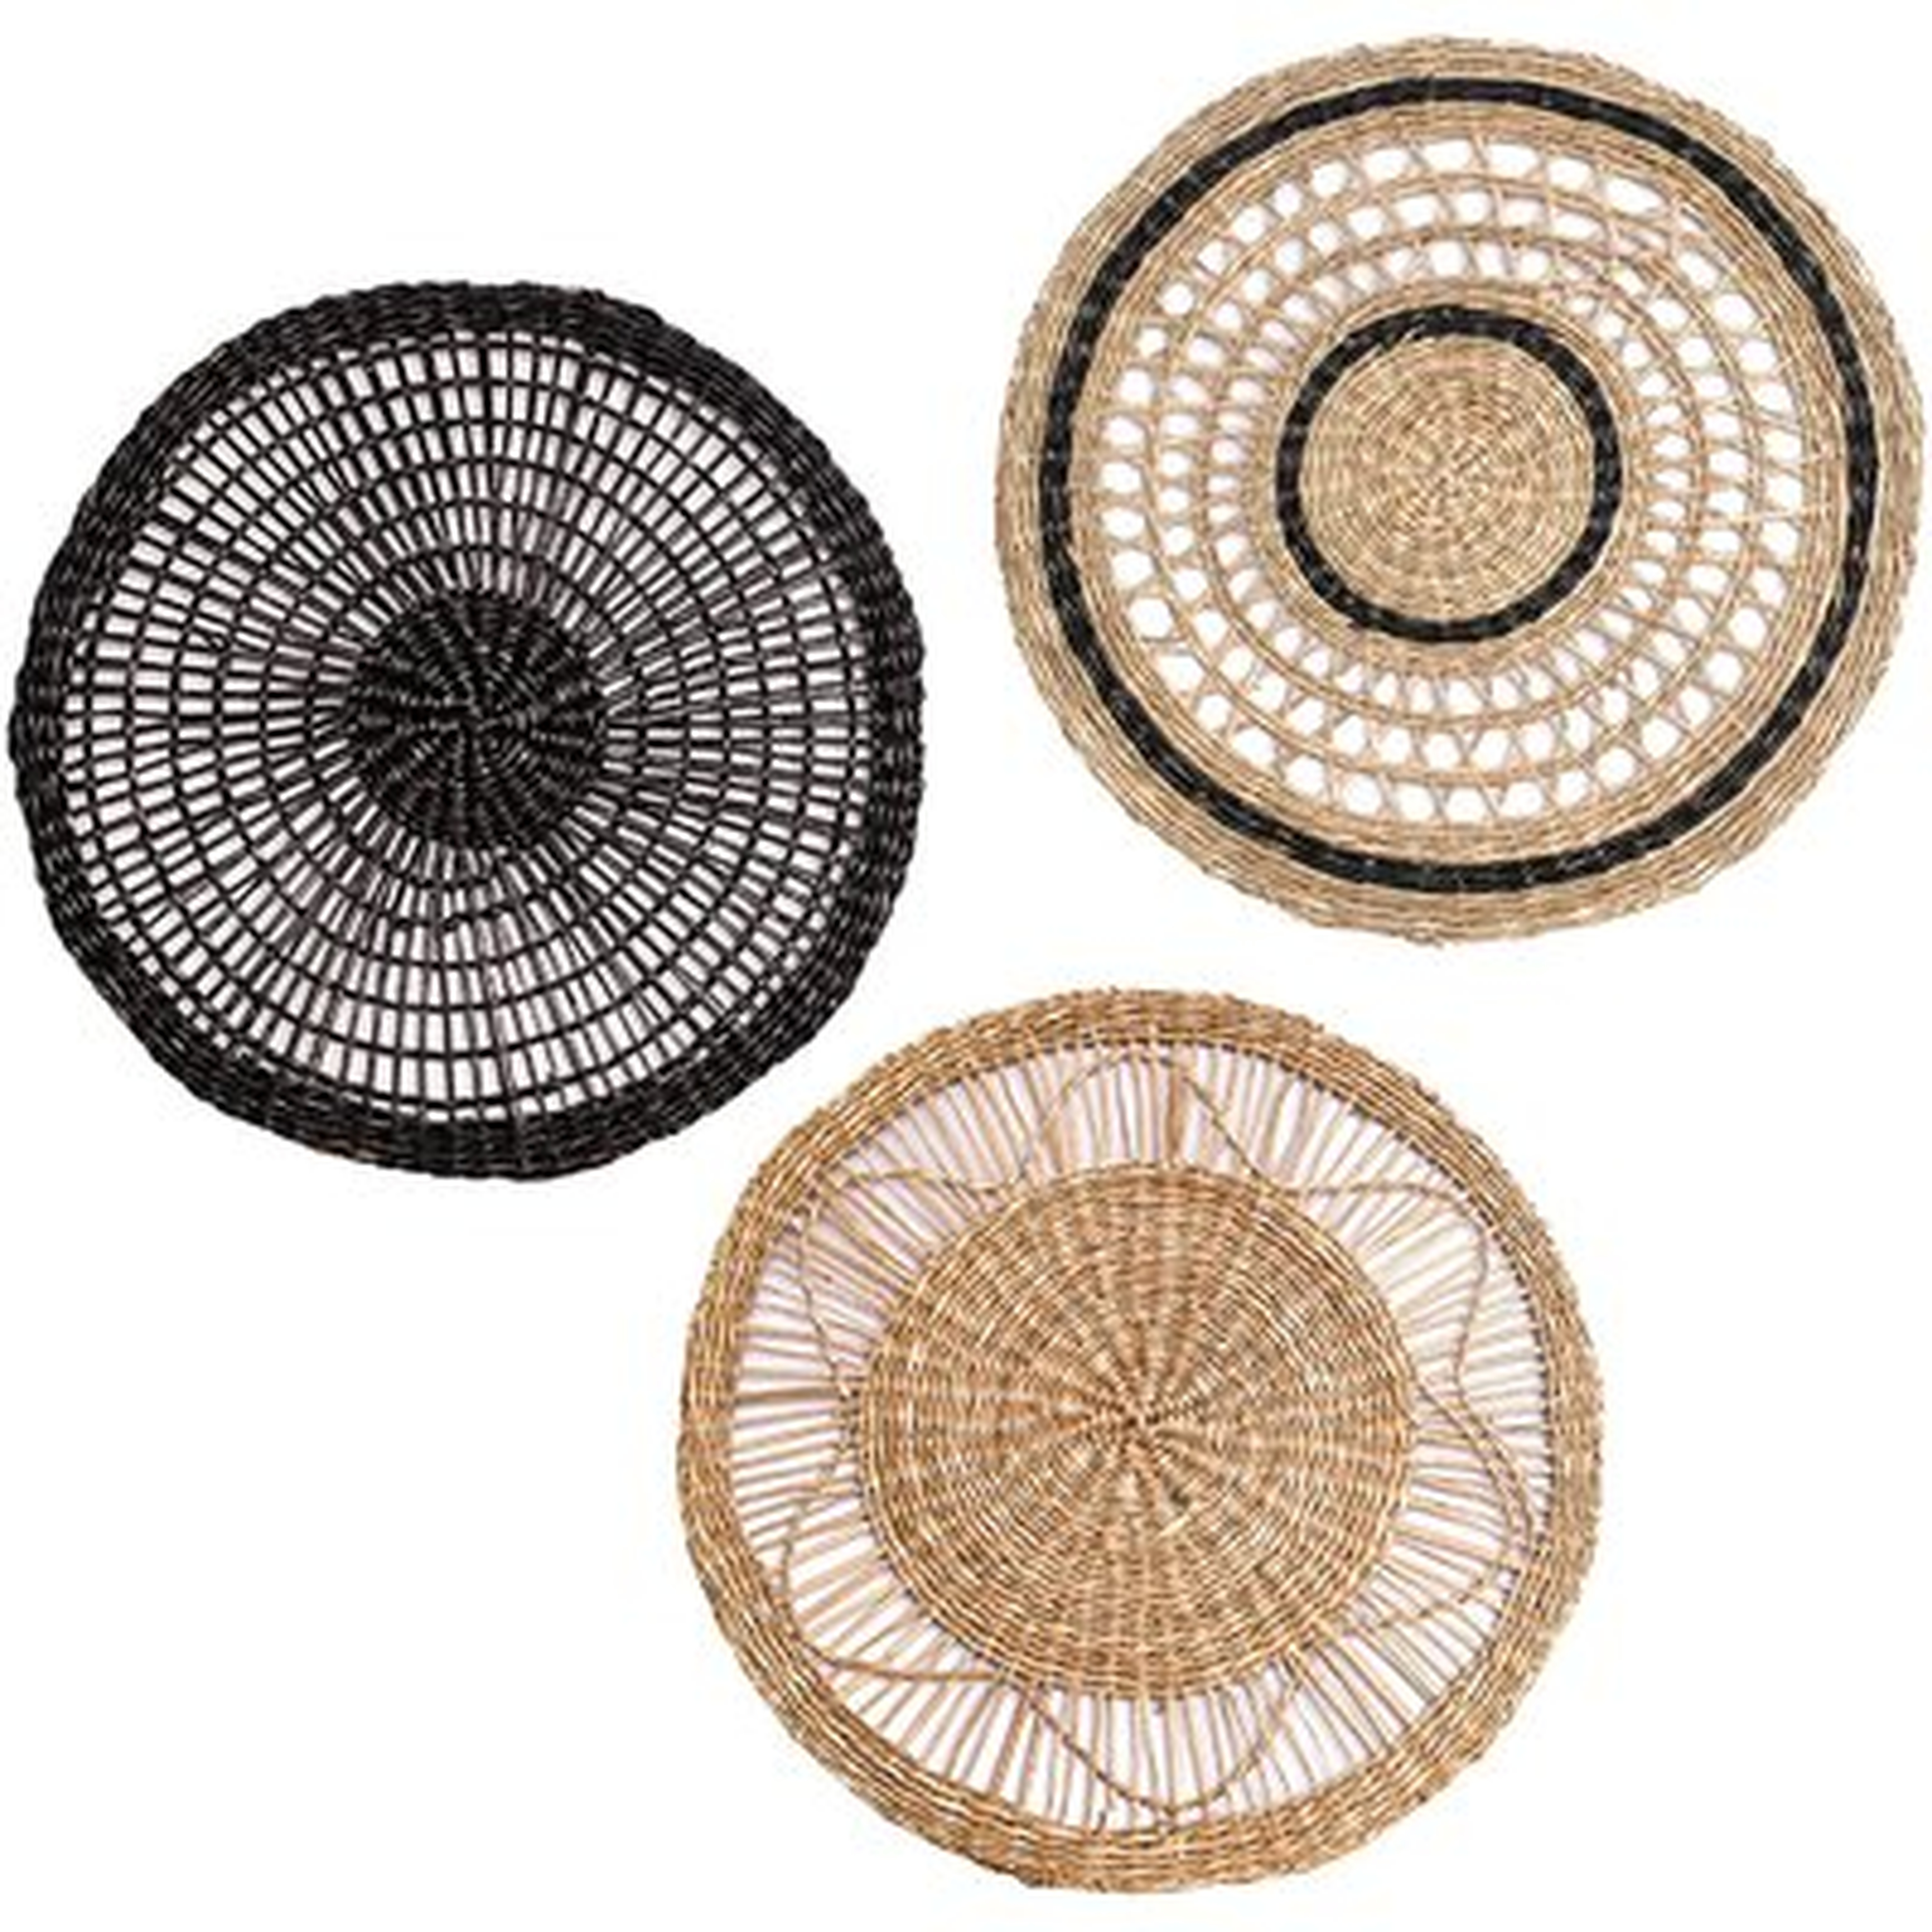 African Wall Baskets, Set of 3 - Wayfair